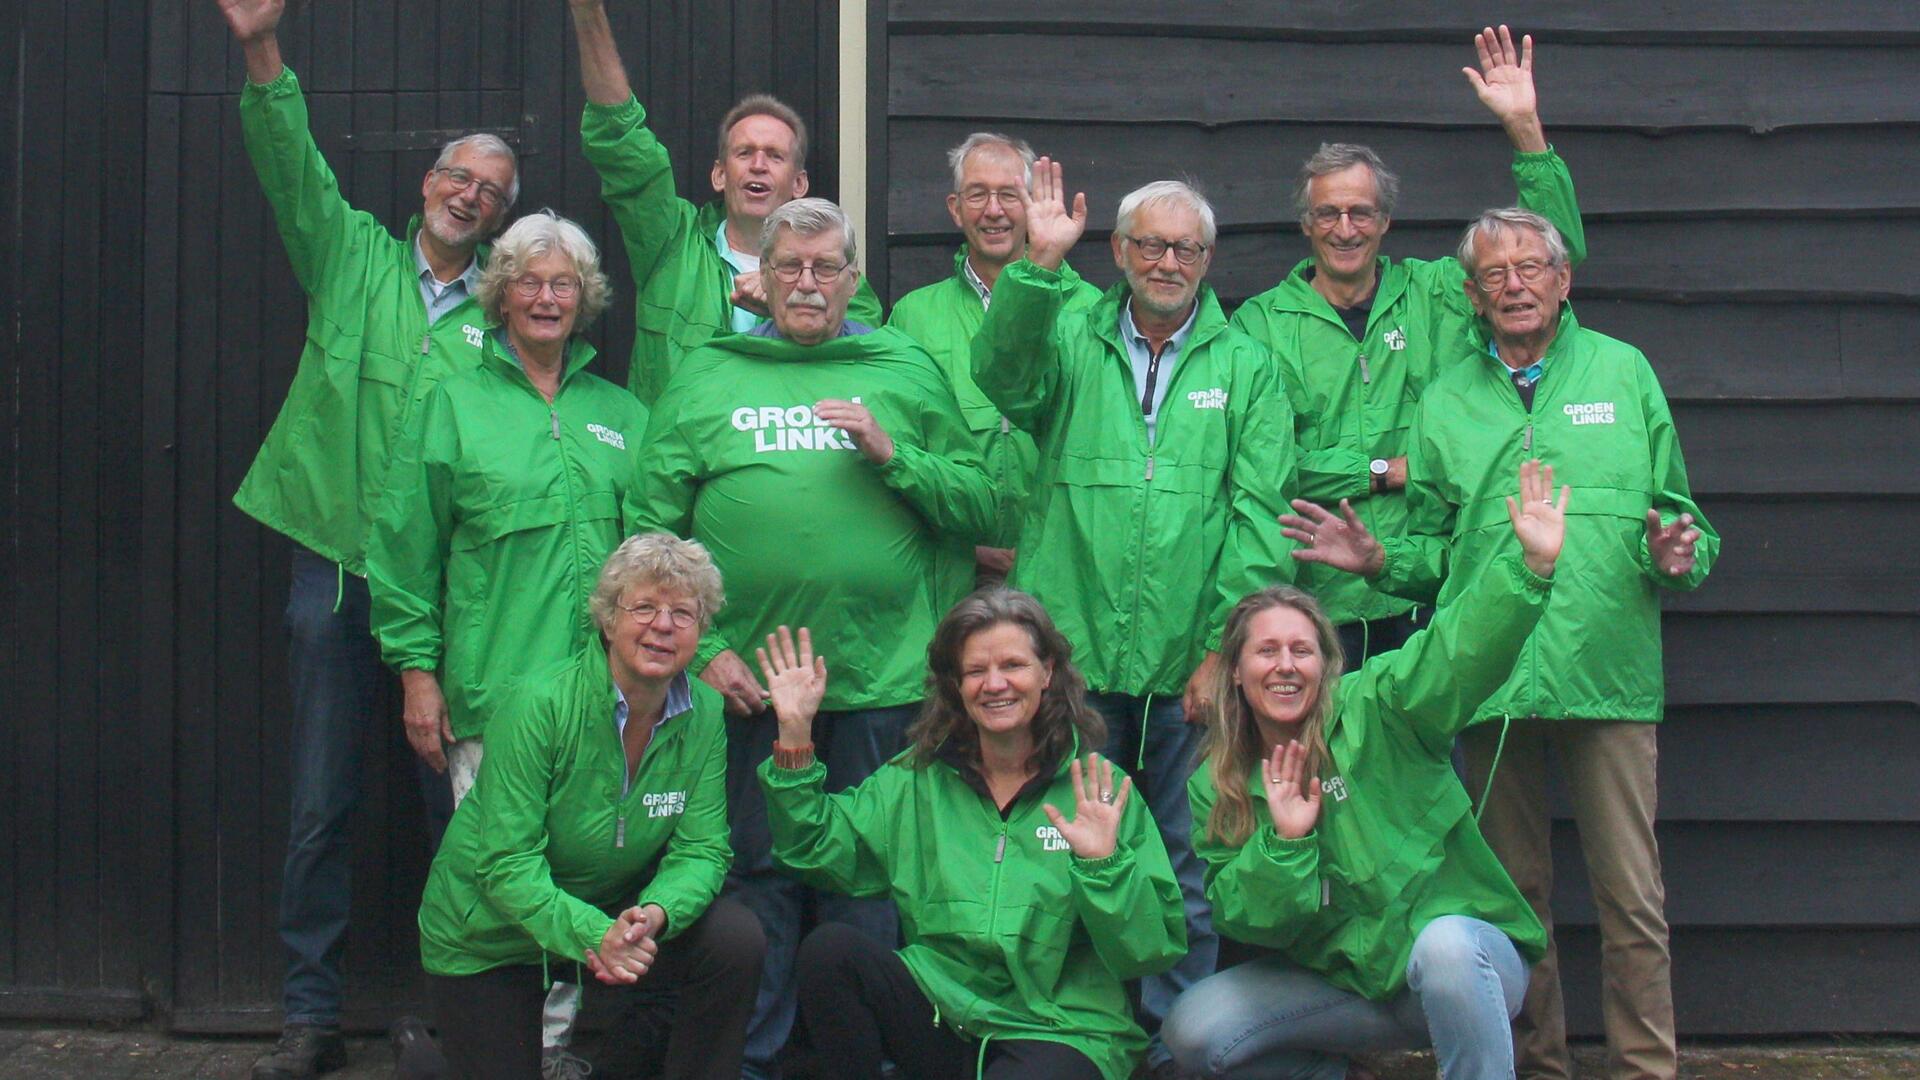 Op deze vrolijke groepsfoto zie je 11 vrouwen en mannen, allemaal gekleed in groene, GroenLinks jasjes. Ze zwaaien enthousiast naar de camera.. 